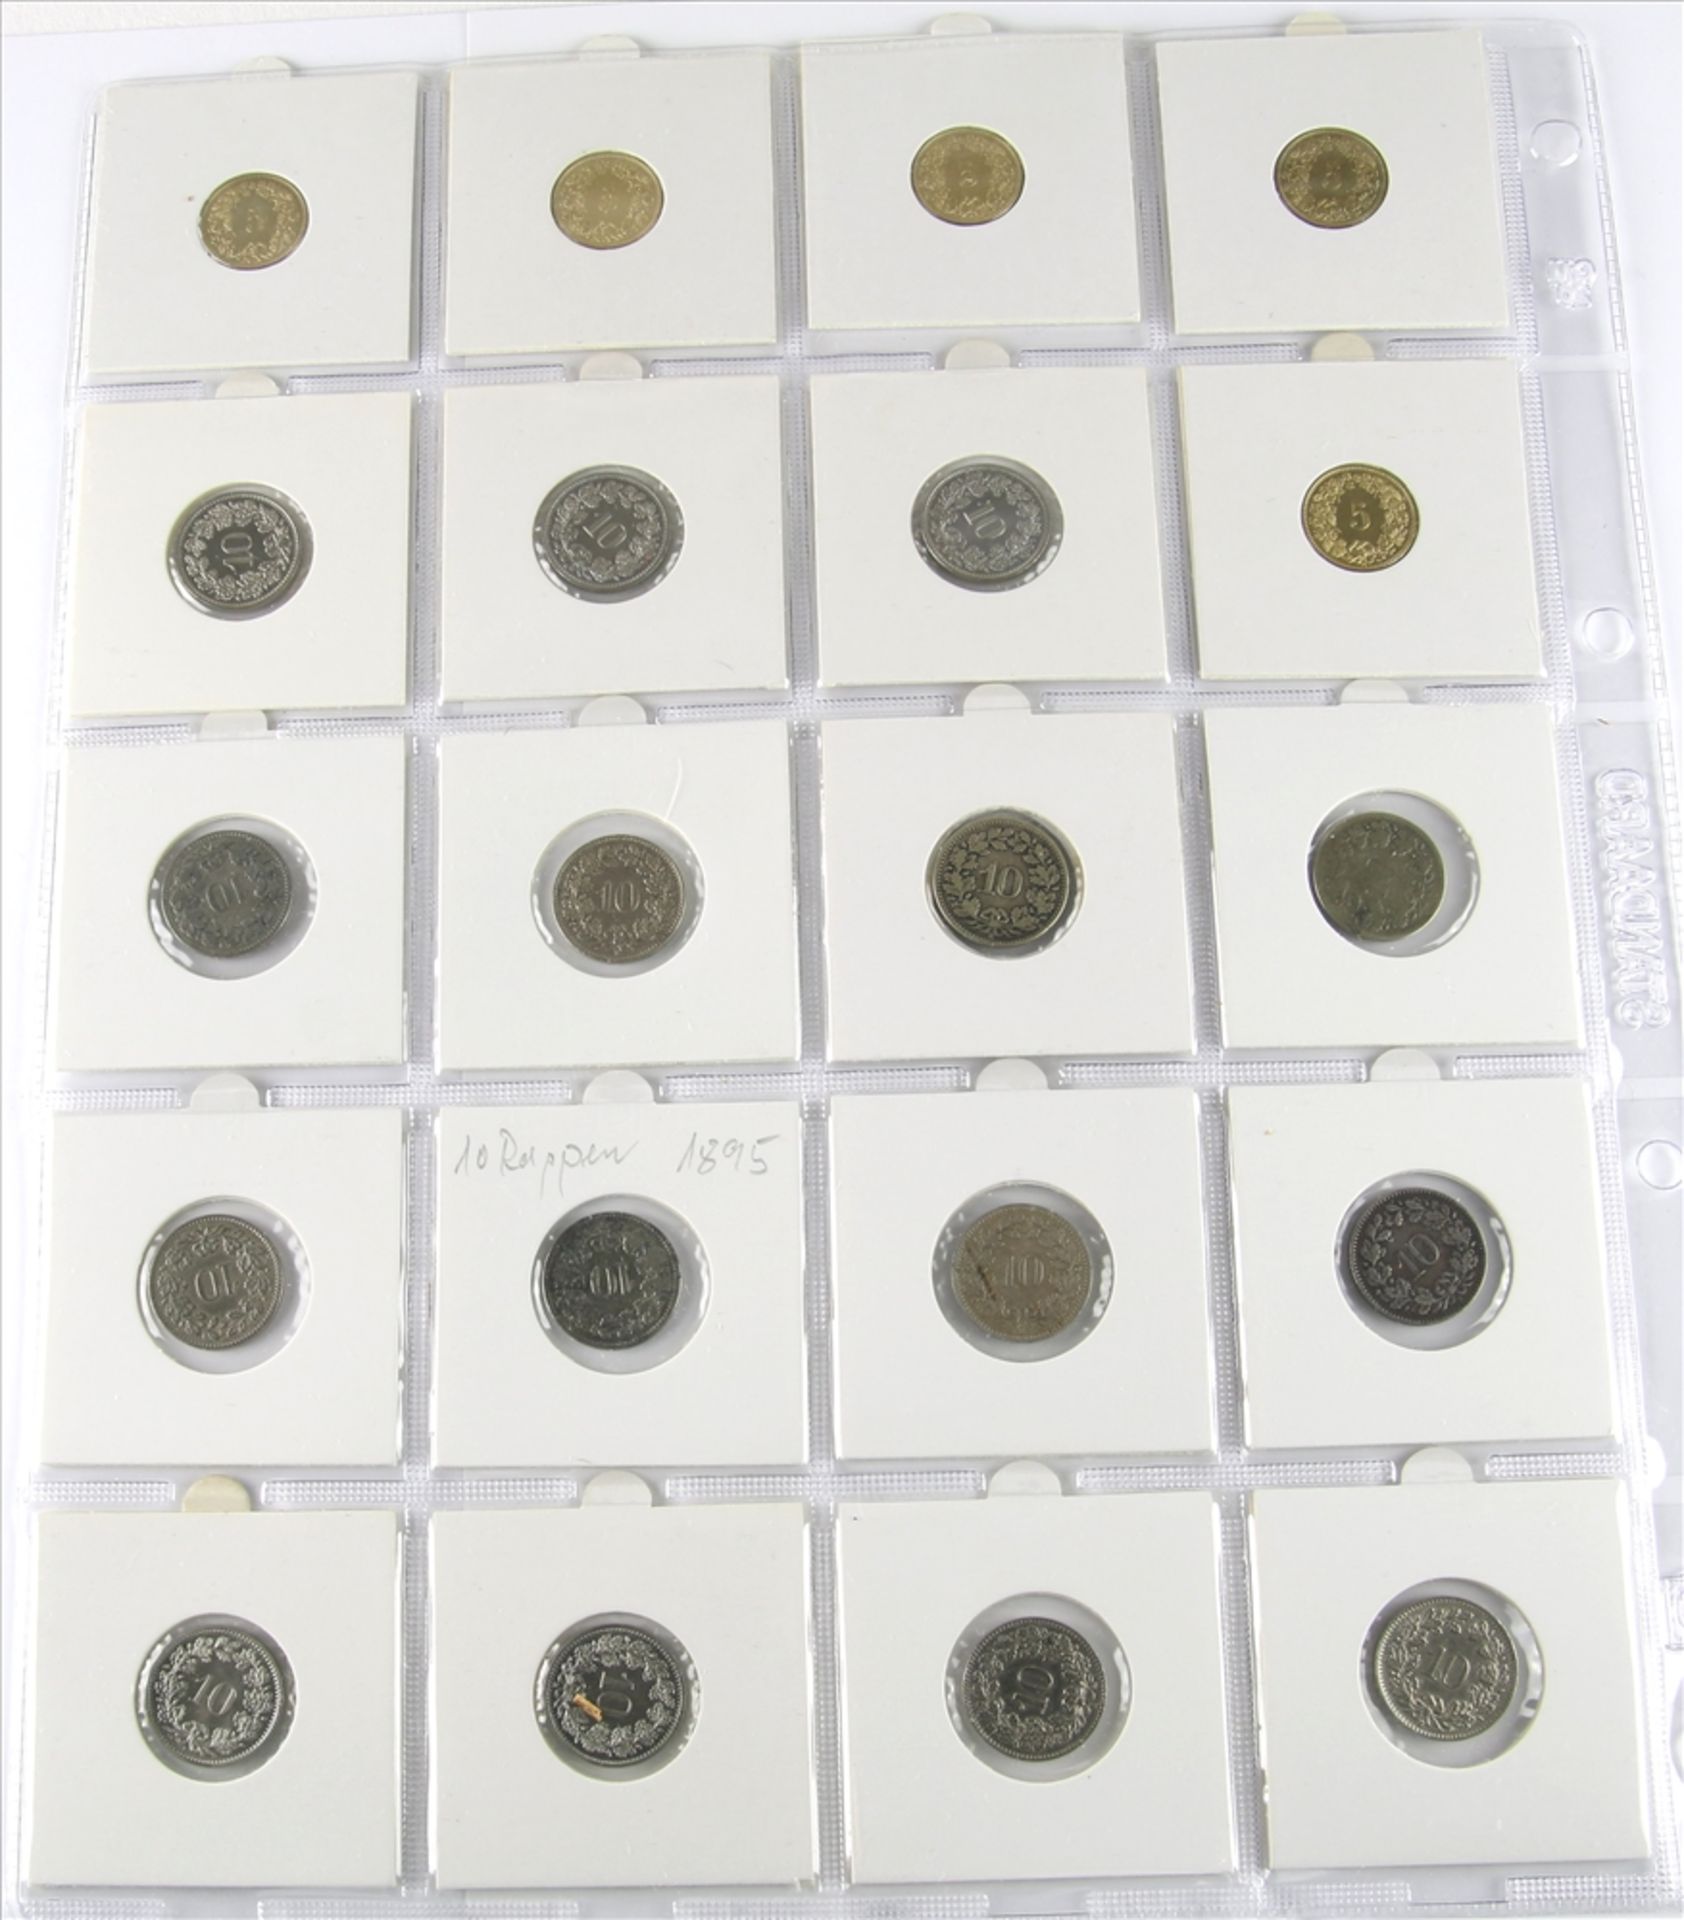 20 Münzen Schweiz Meist 10 Rappen. Unterschiedliche Nominale, Jahrgänge und Zustände. Von - Bild 2 aus 2